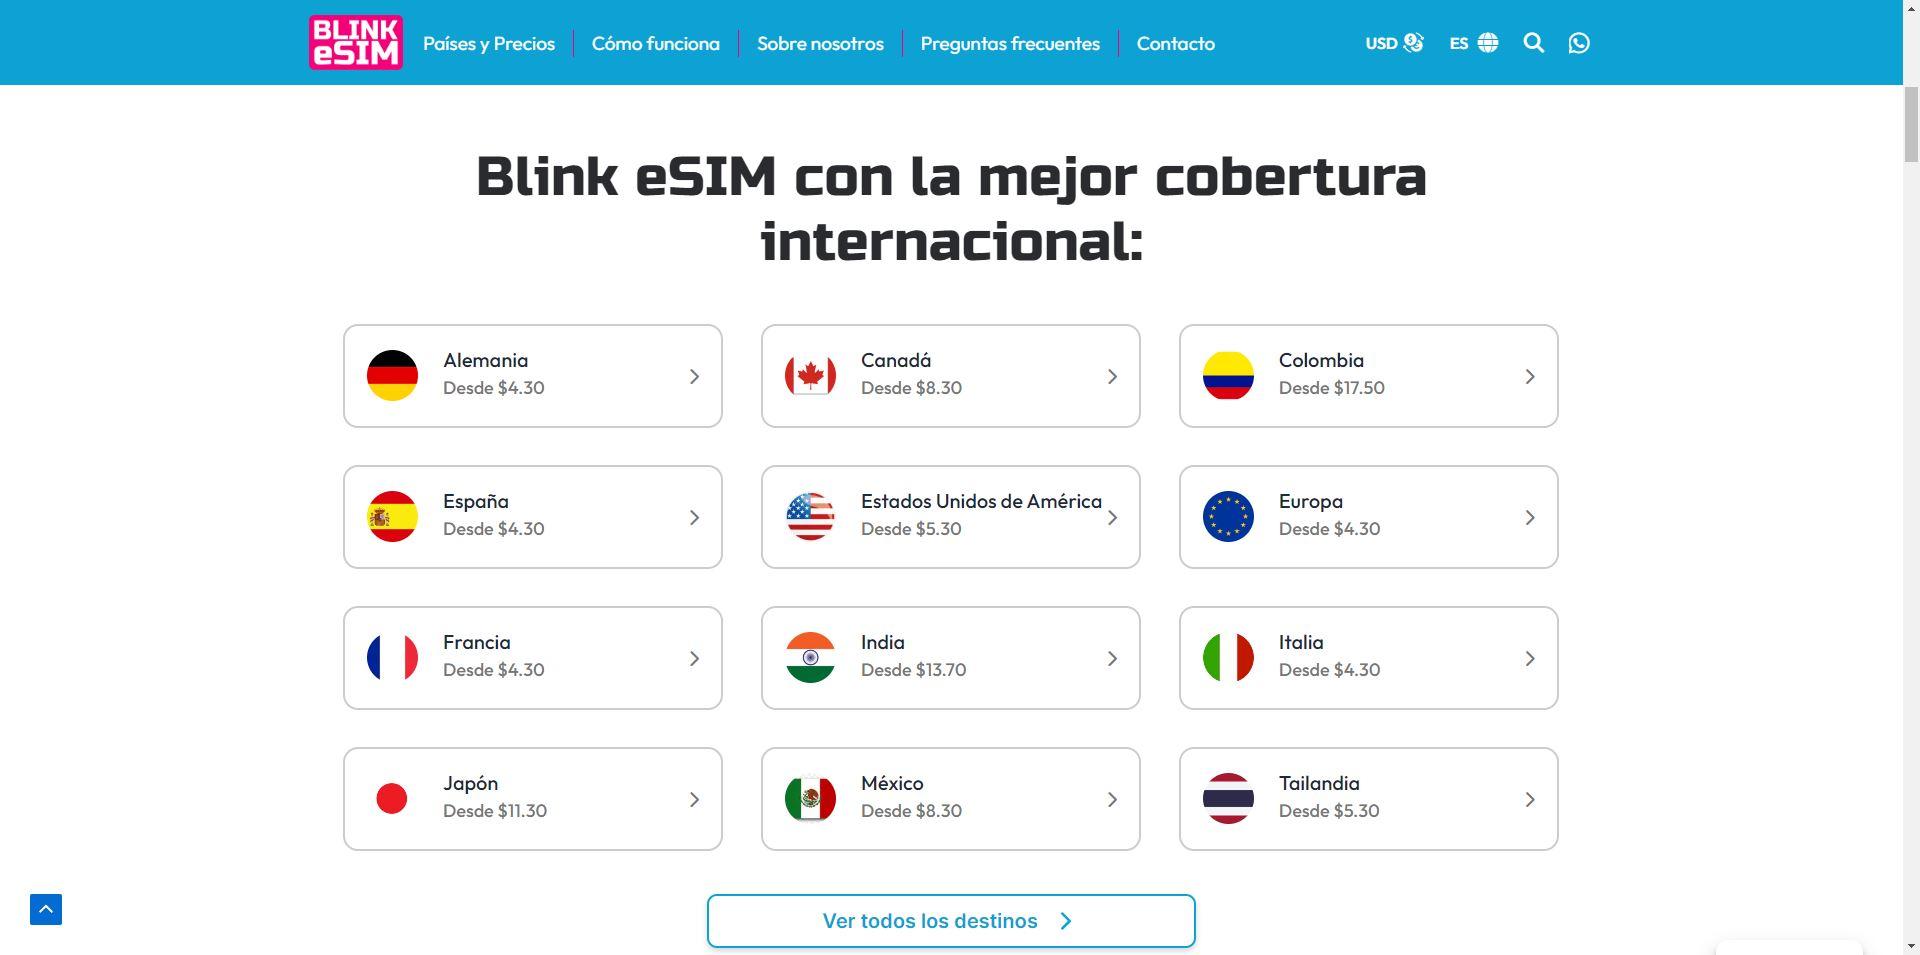 Compatibilidad de BLINK eSIM con diferentes países y precios